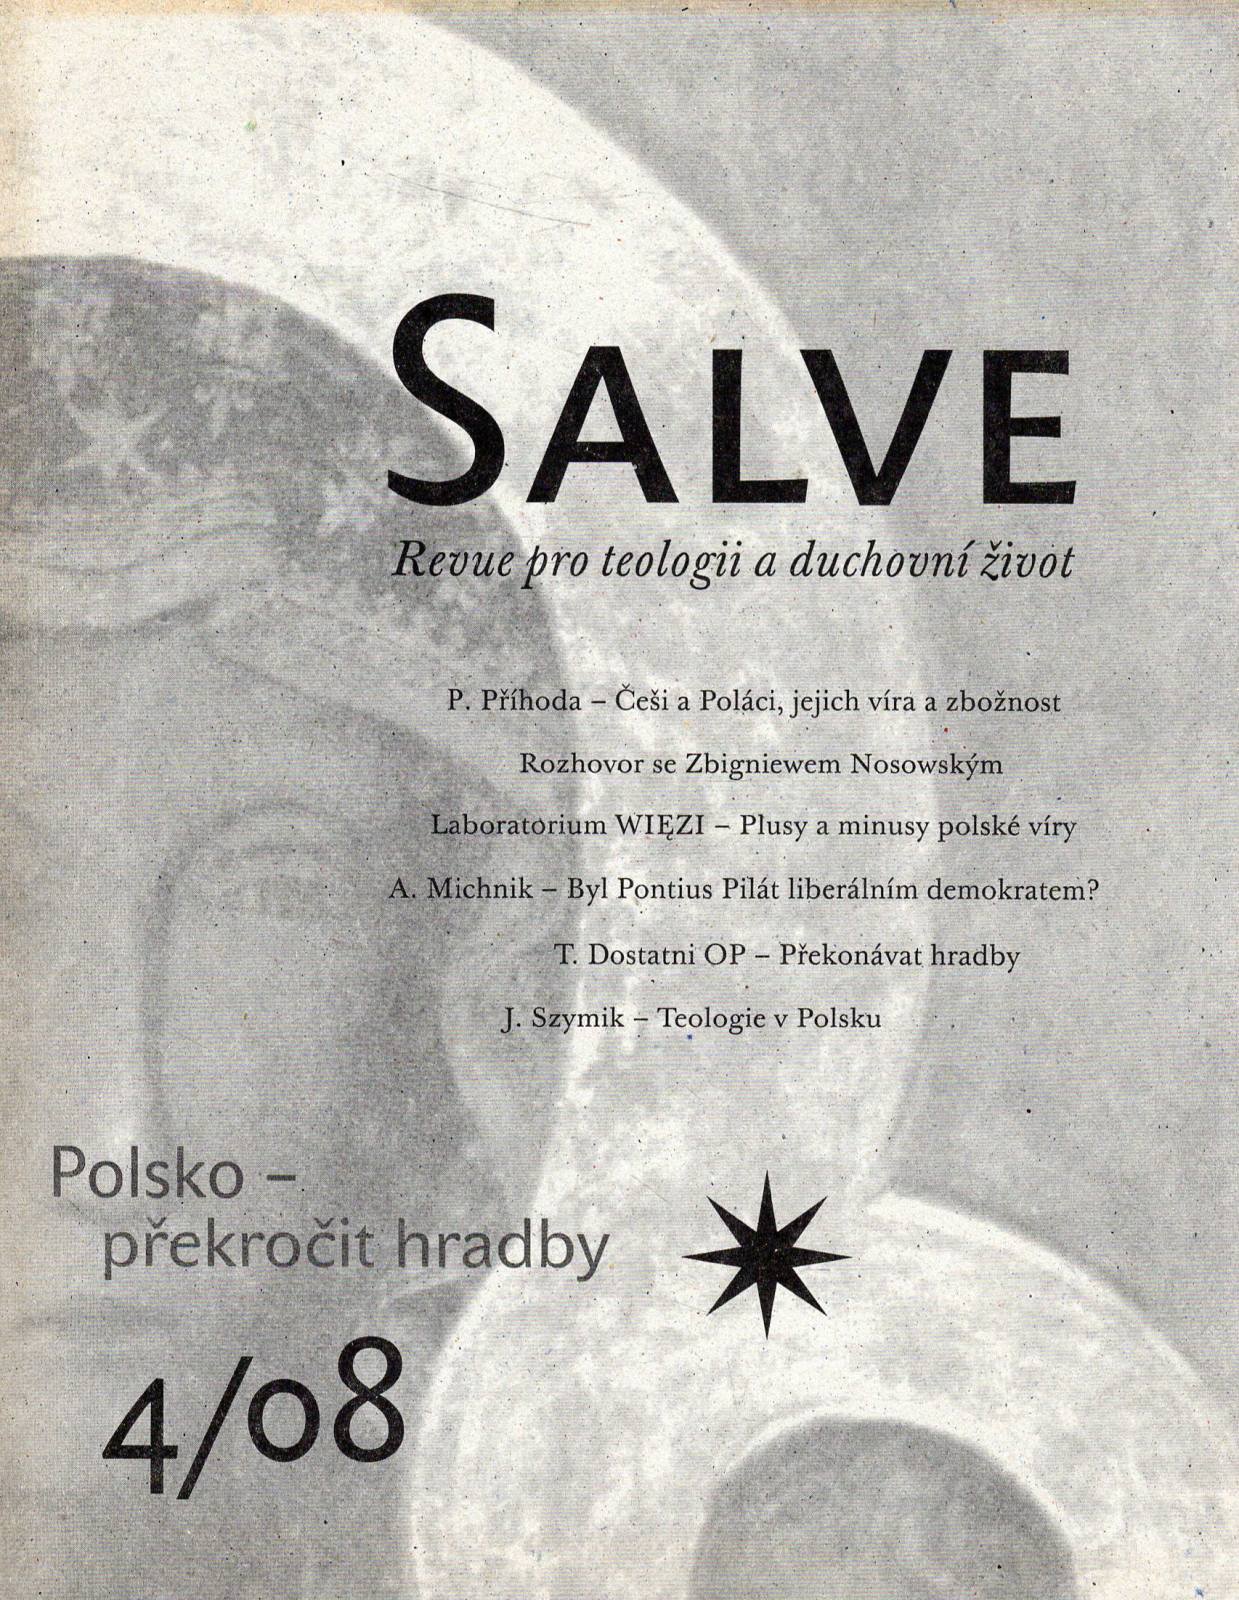 Salve, Revue pro teologii a duchovní život 4/08 - Polsko - překročit hradby